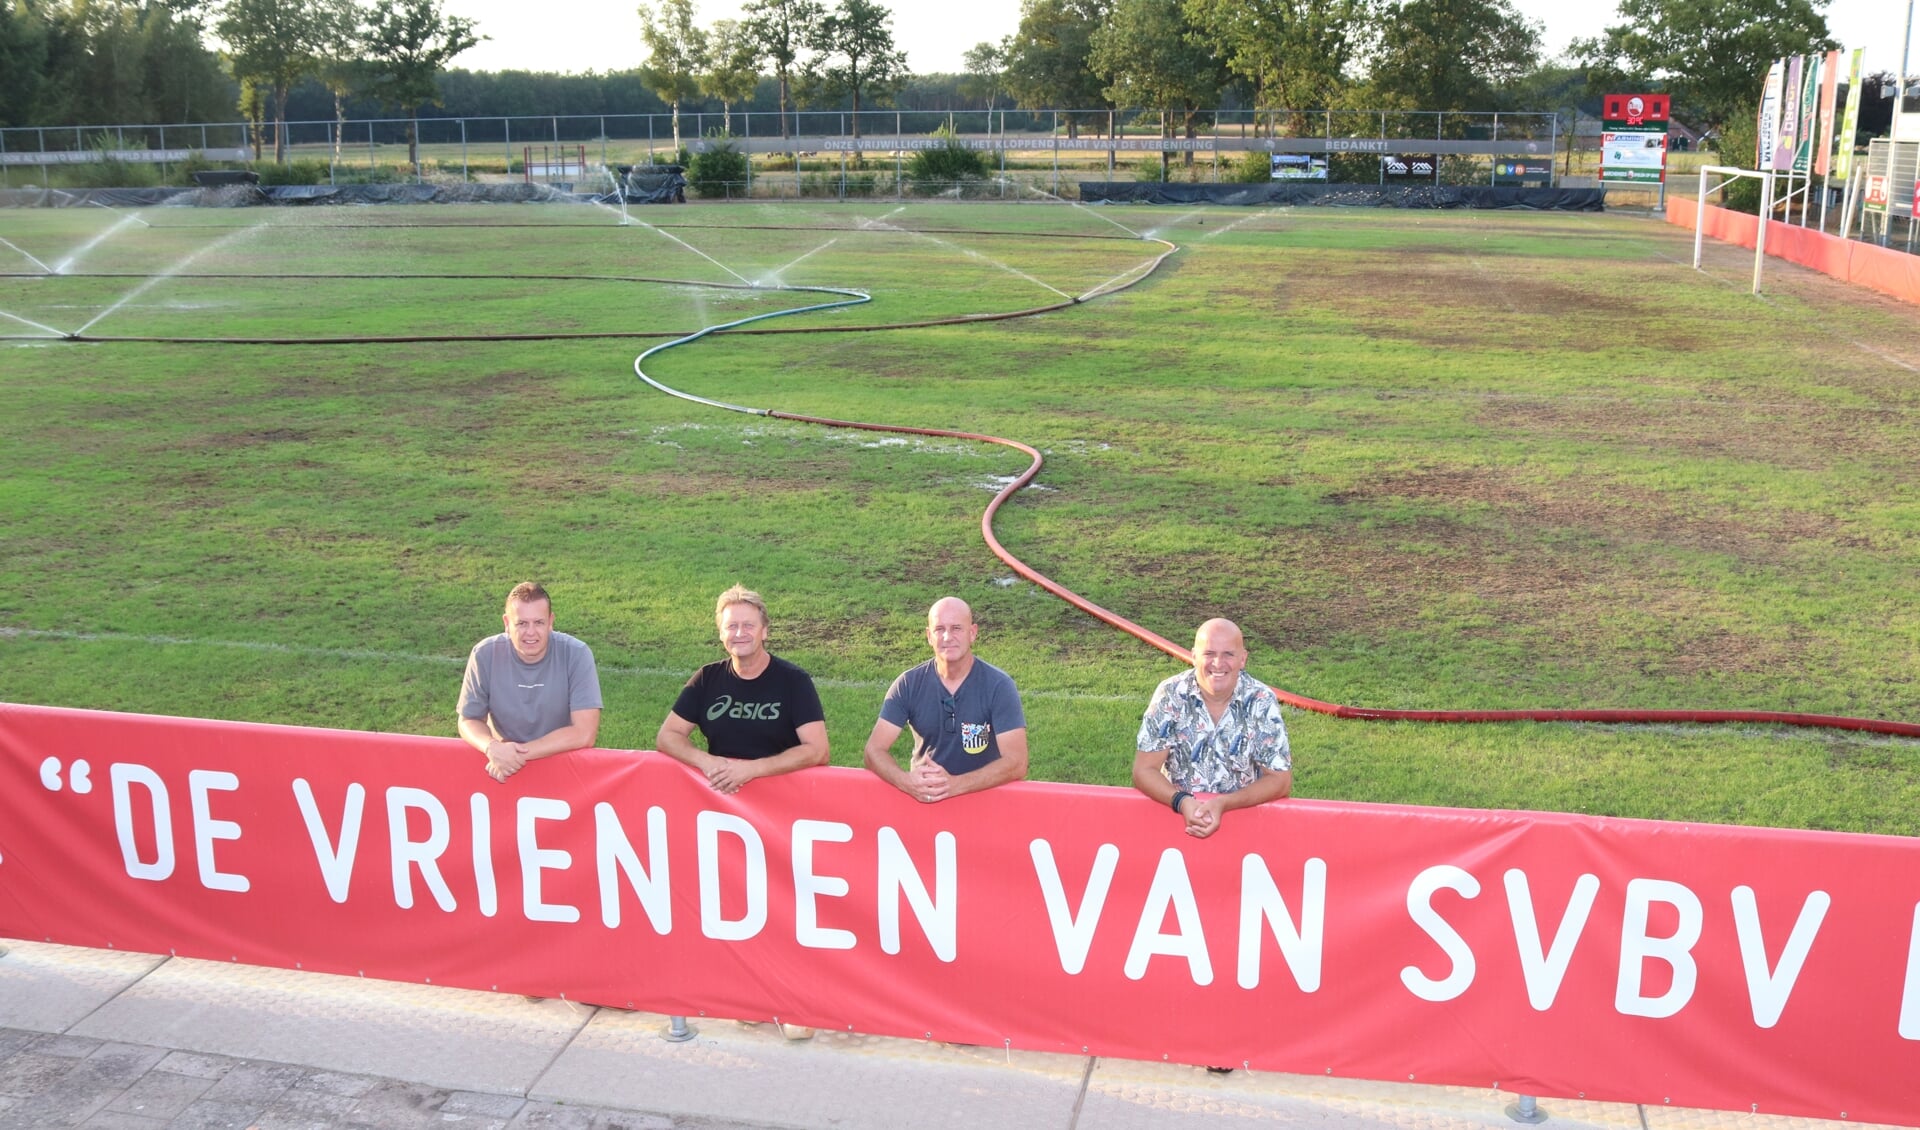 Het bestuur van 'De vrienden van SVBV': vlnr: Hans Oplaat, Bert Dinkelman, Mike Lemmers en Alex Welbergen. Niet op de foto Jan Teunissen. Foto: Arjen Dieperink